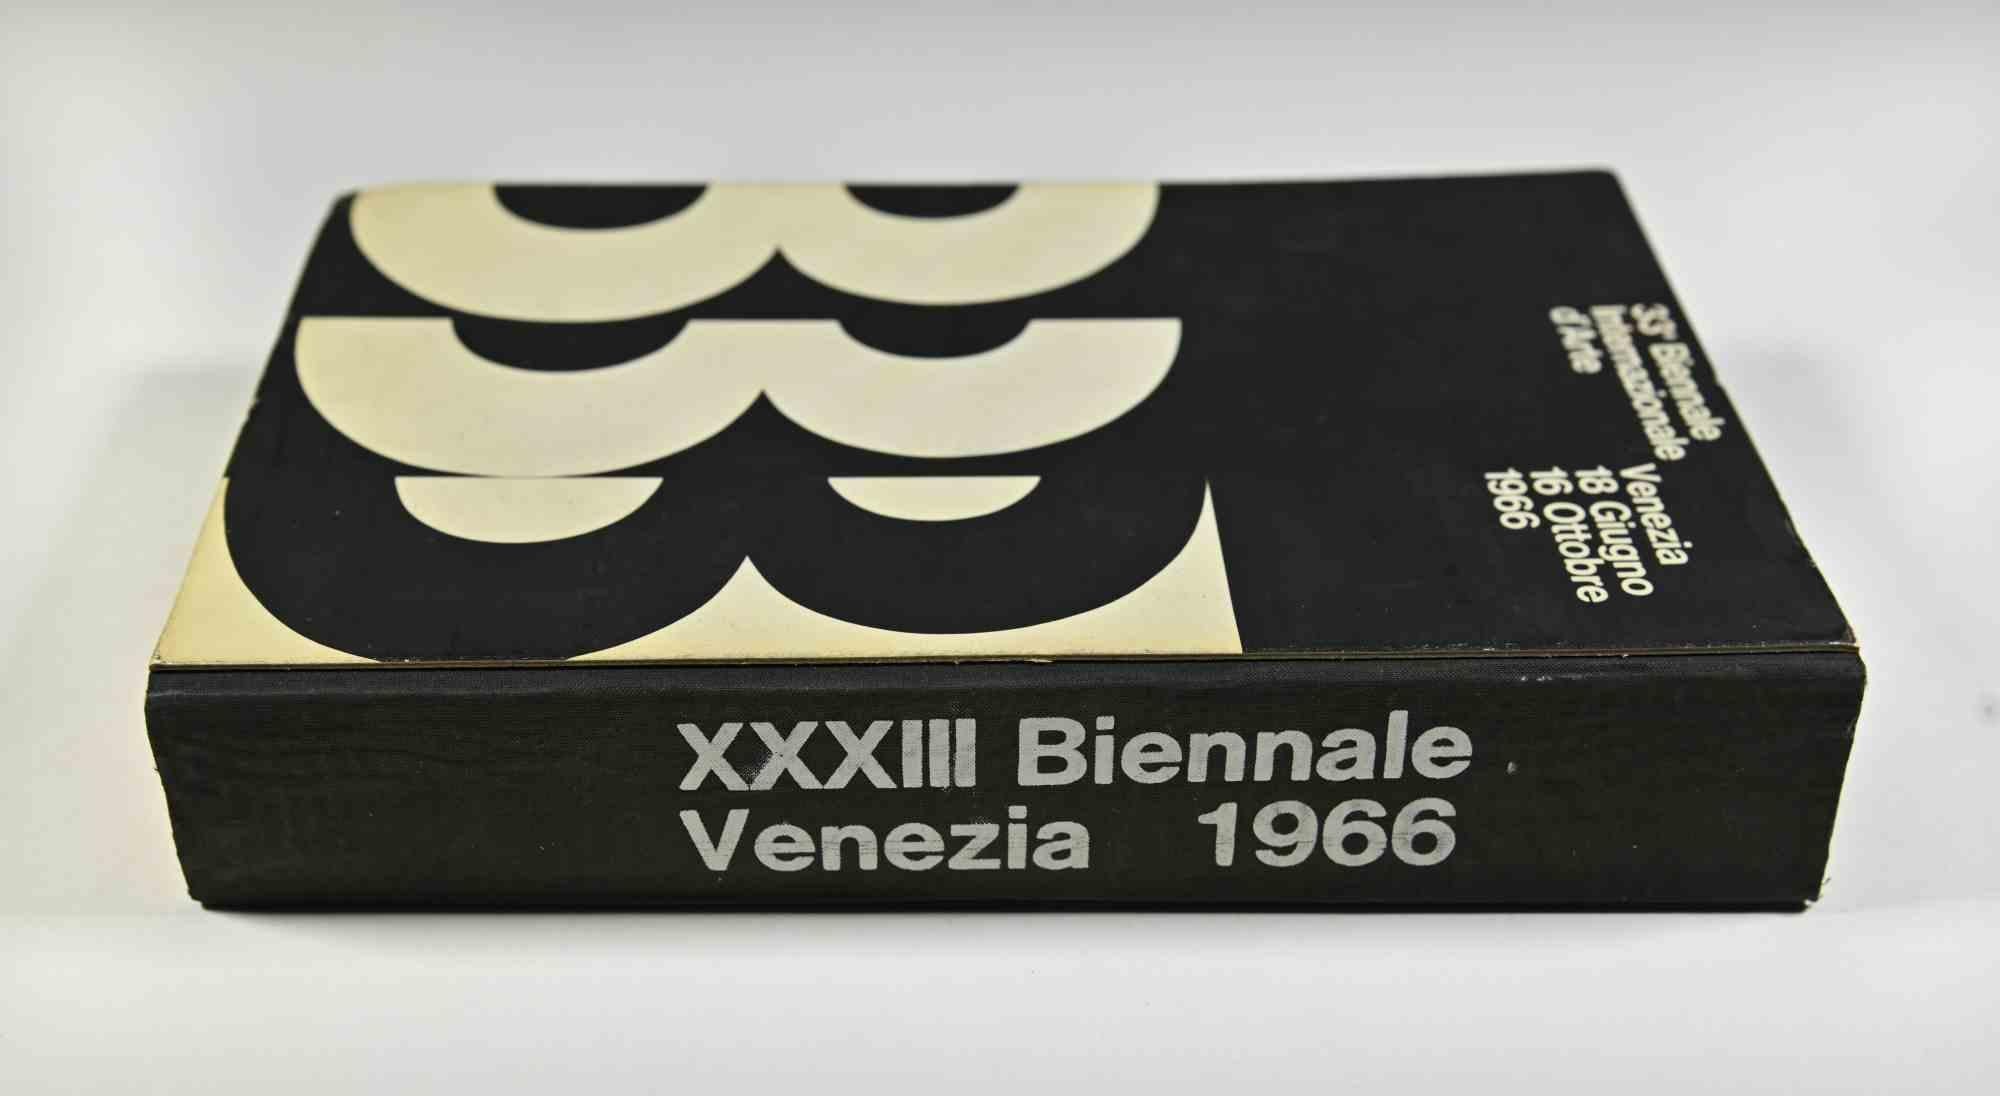 Thirty-Third Venice International Art Biennial - Rare Book - 1966 For Sale 1